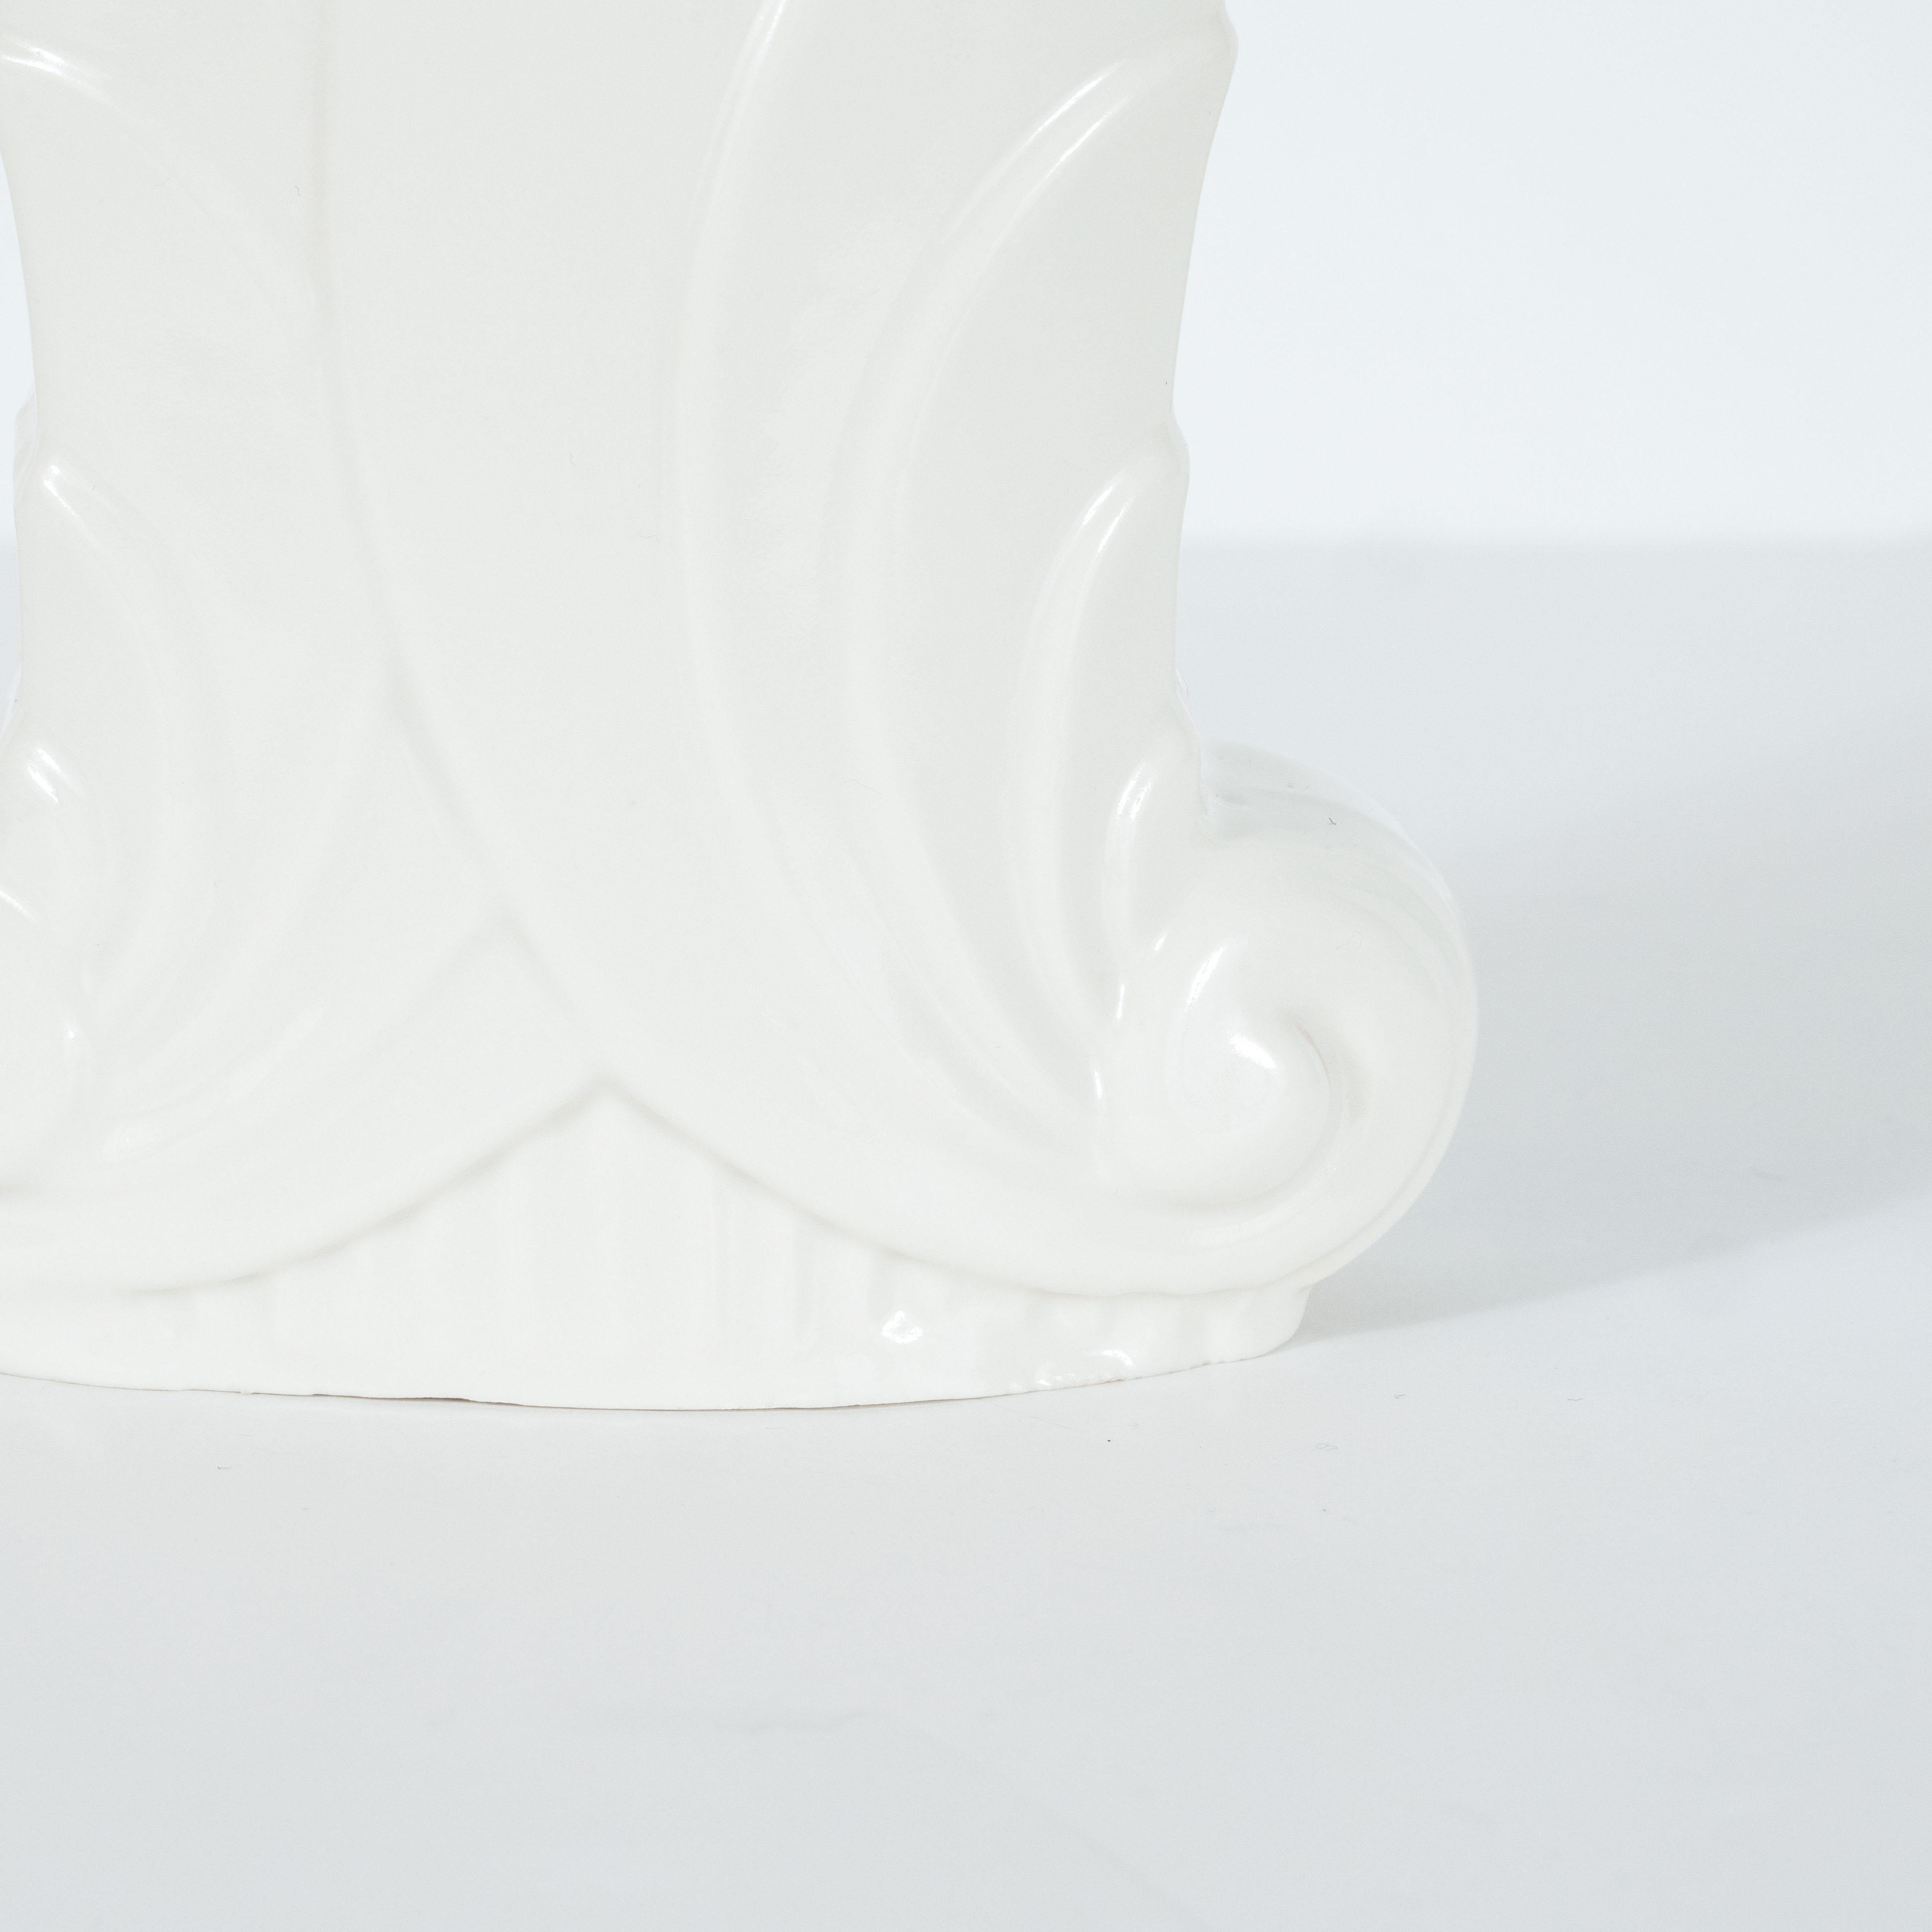 Ce vase Art déco raffiné a été réalisé aux États-Unis par le fabricant estimé Abingdon Co. vers 1940. Il présente une base cannelée et un corps rectangulaire étagé qui se superpose à des formes étagées de volutes stylisées et se termine par une